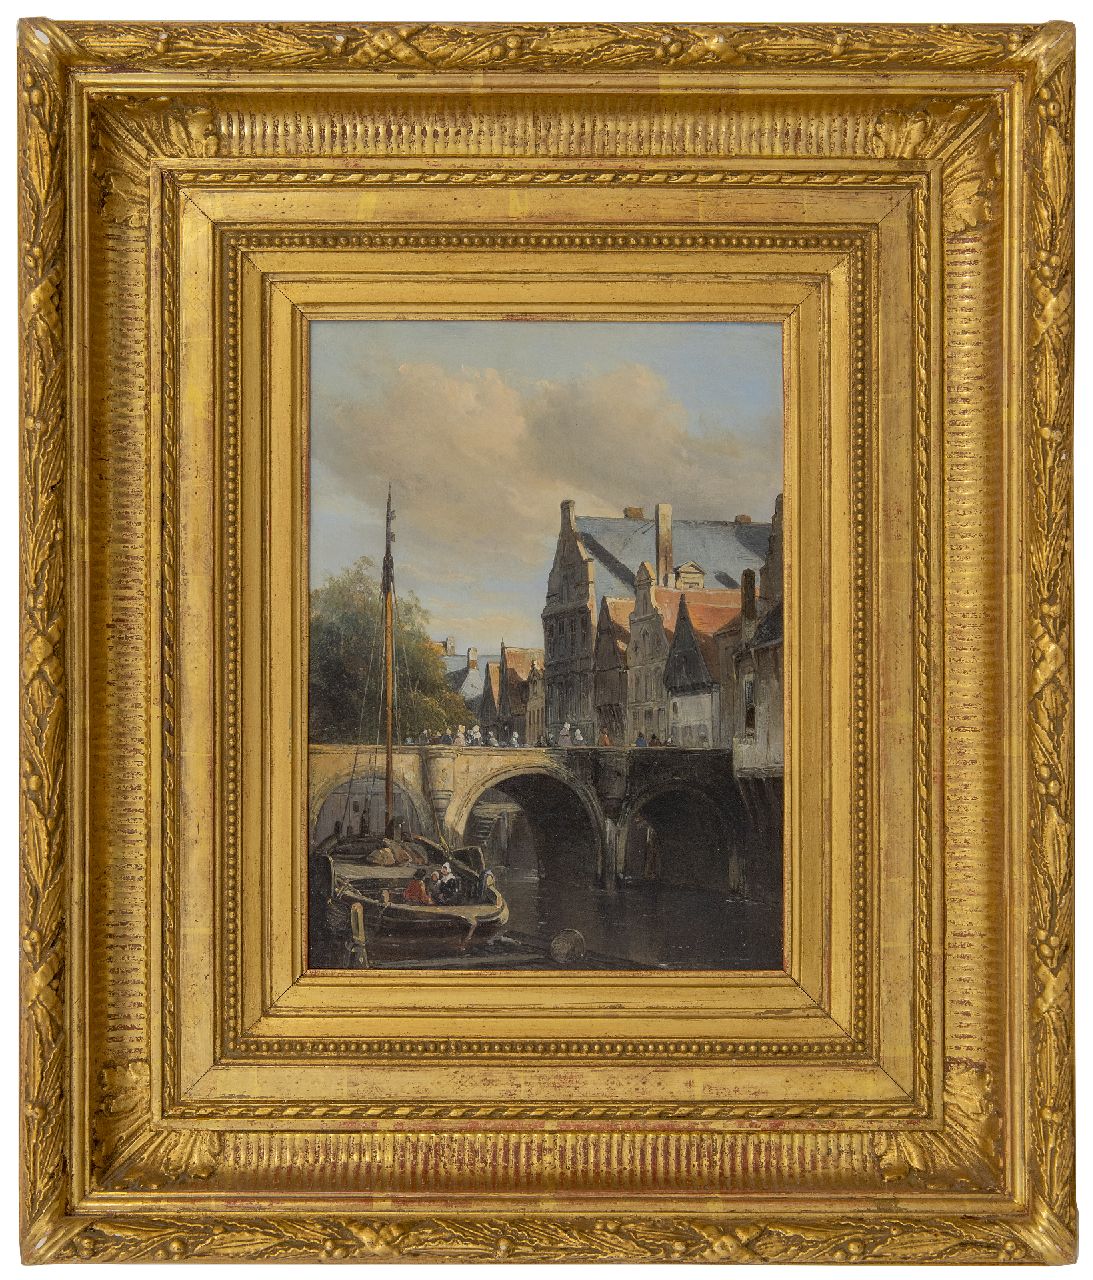 Waldorp A.  | Antonie Waldorp | Schilderijen te koop aangeboden | Stadsgracht met afgemeerde botter, olieverf op paneel 29,8 x 22,0 cm, gesigneerd linksonder op achtersteven van het schip